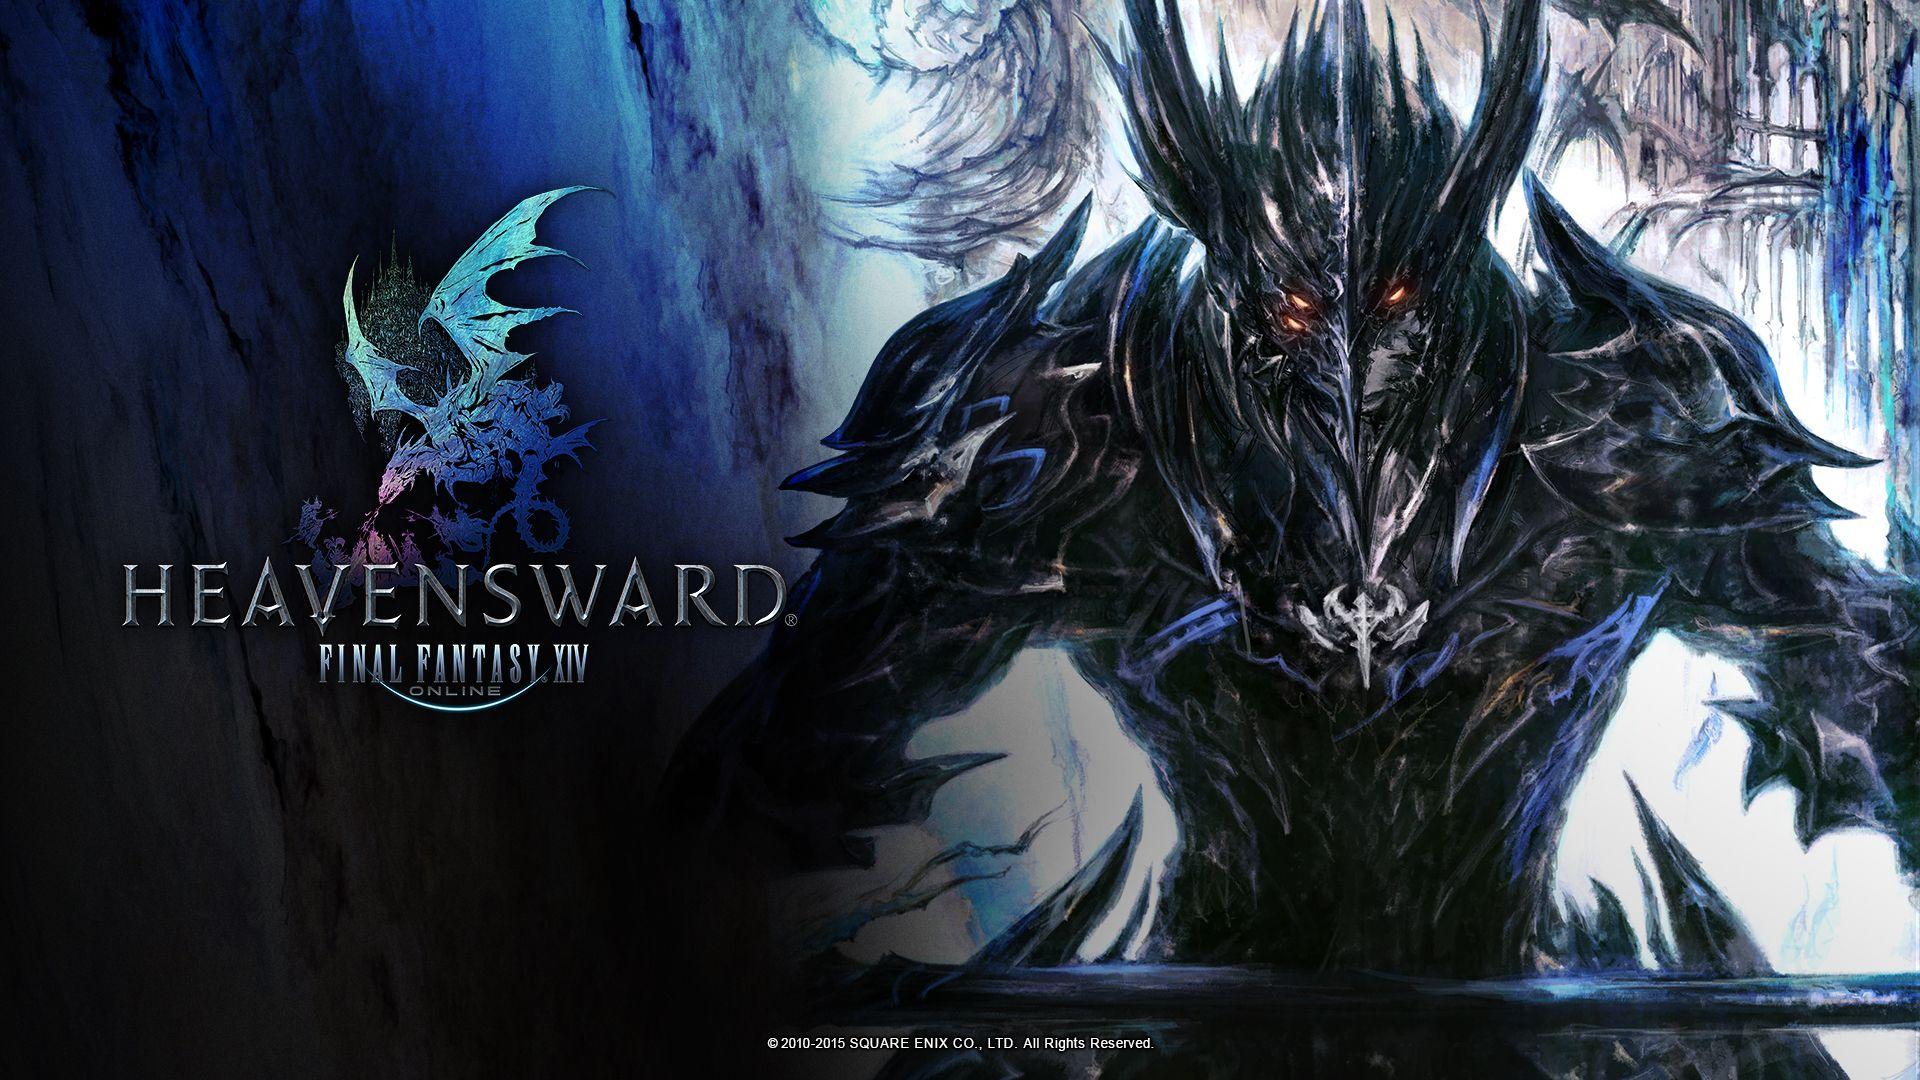 Final Fantasy XIV: Heavensward Review (2nd Opinion)